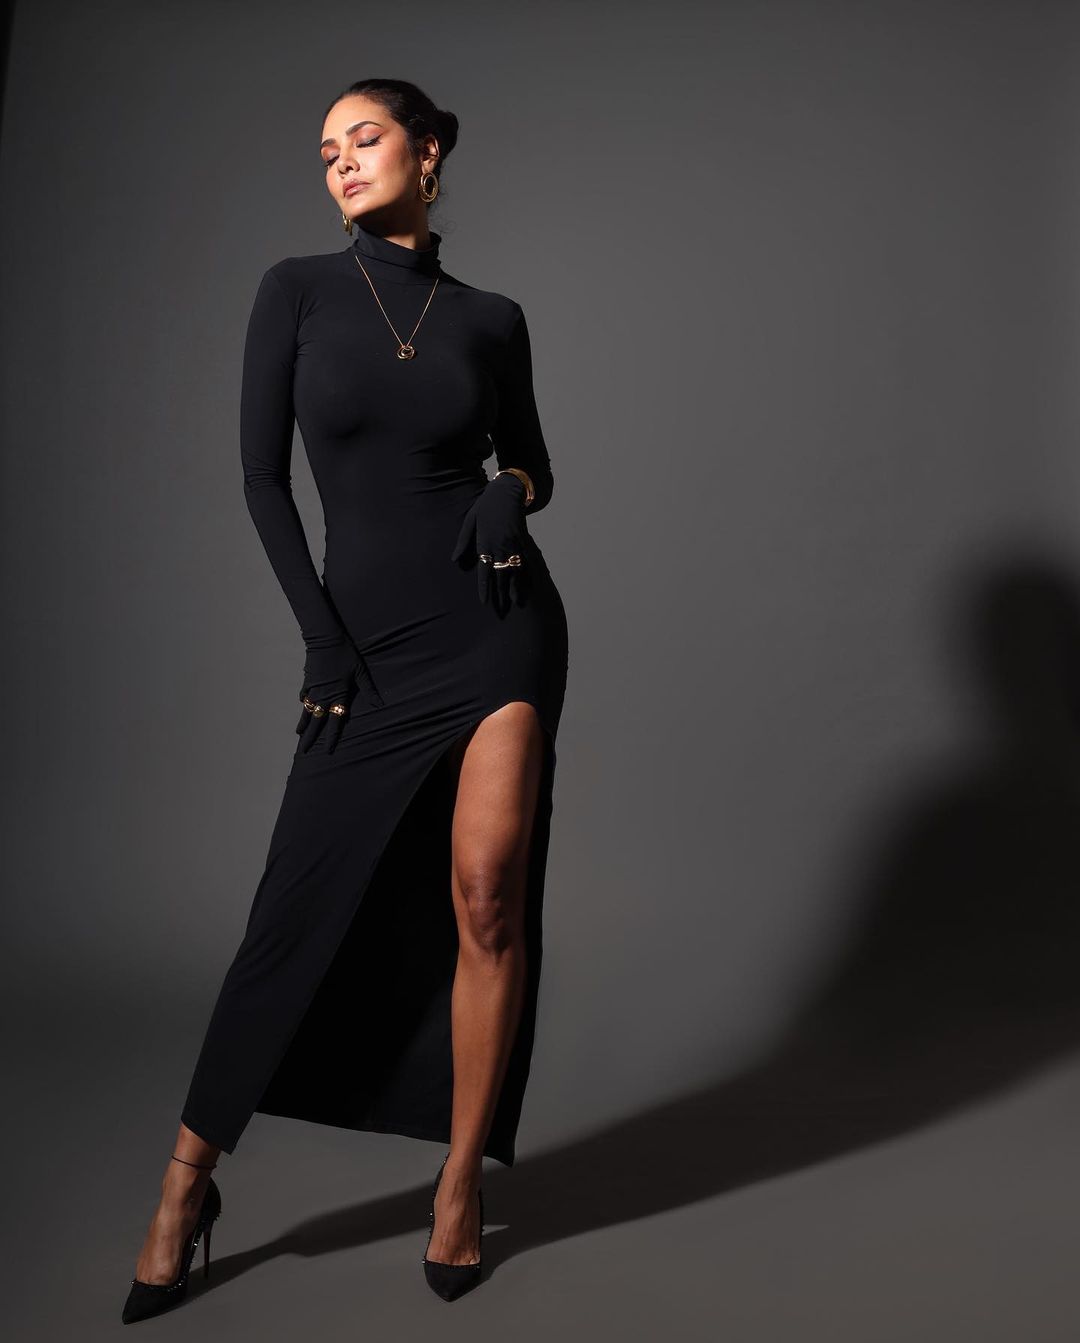 Esha Gupta sexy body tight black dress